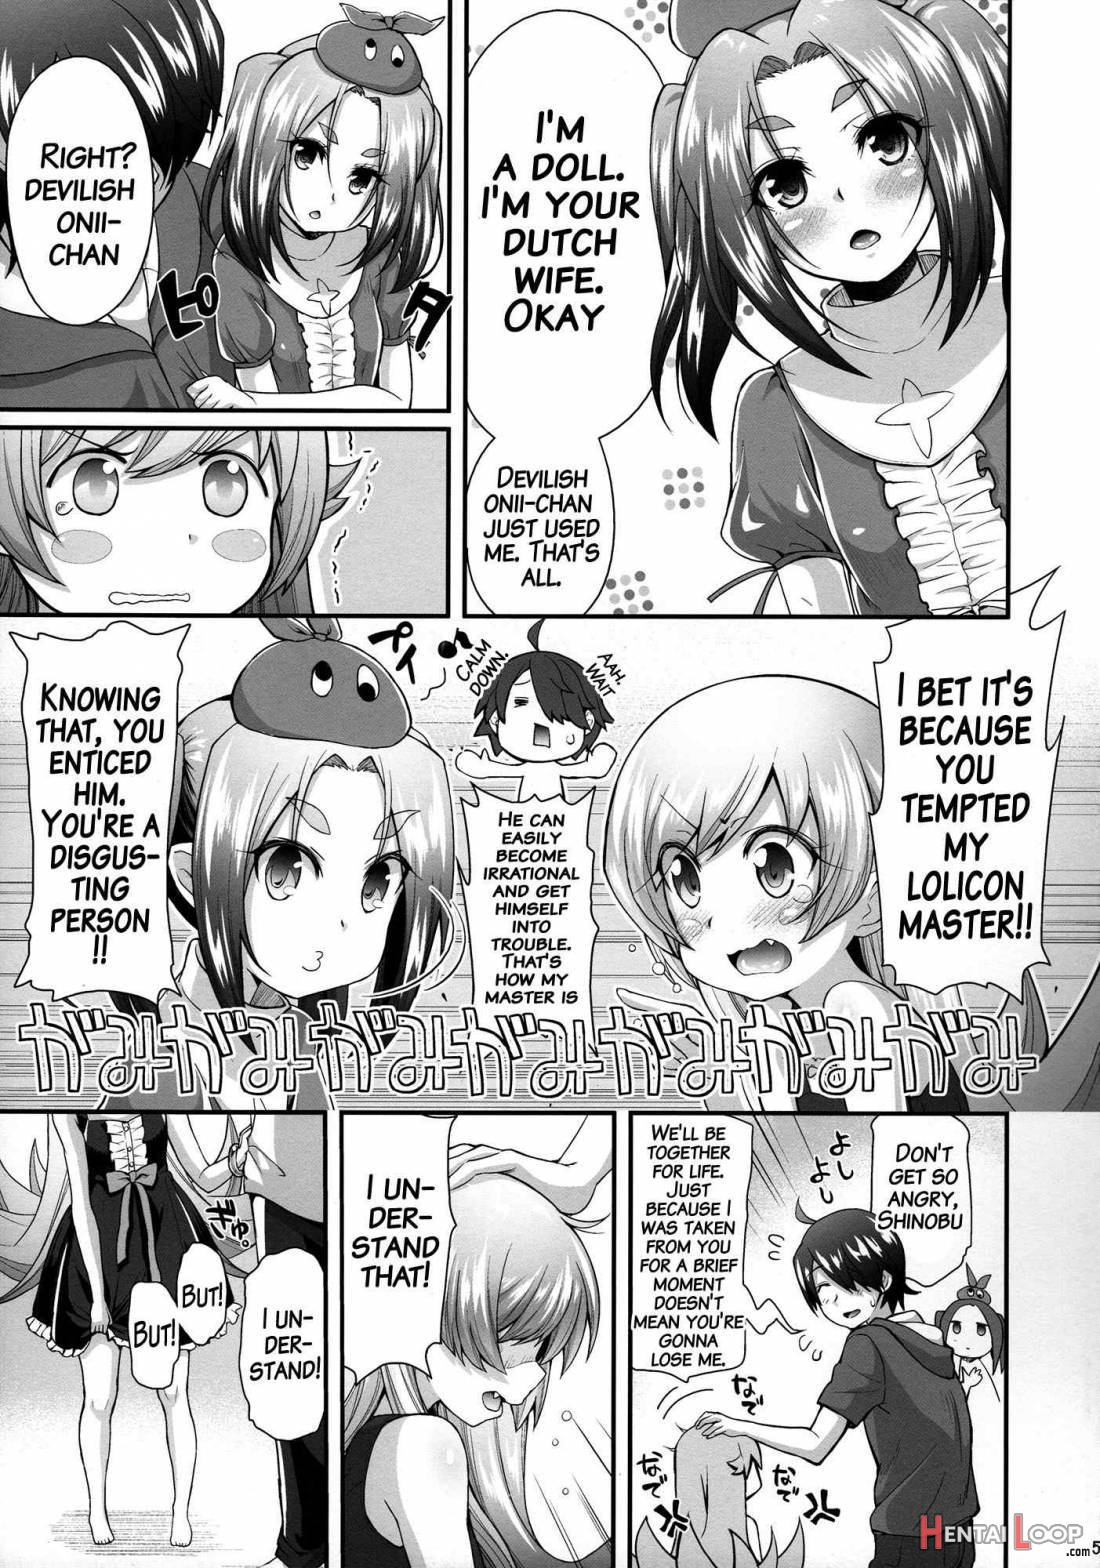 Pachimonogatari Part 10: Koyomi Diary page 4